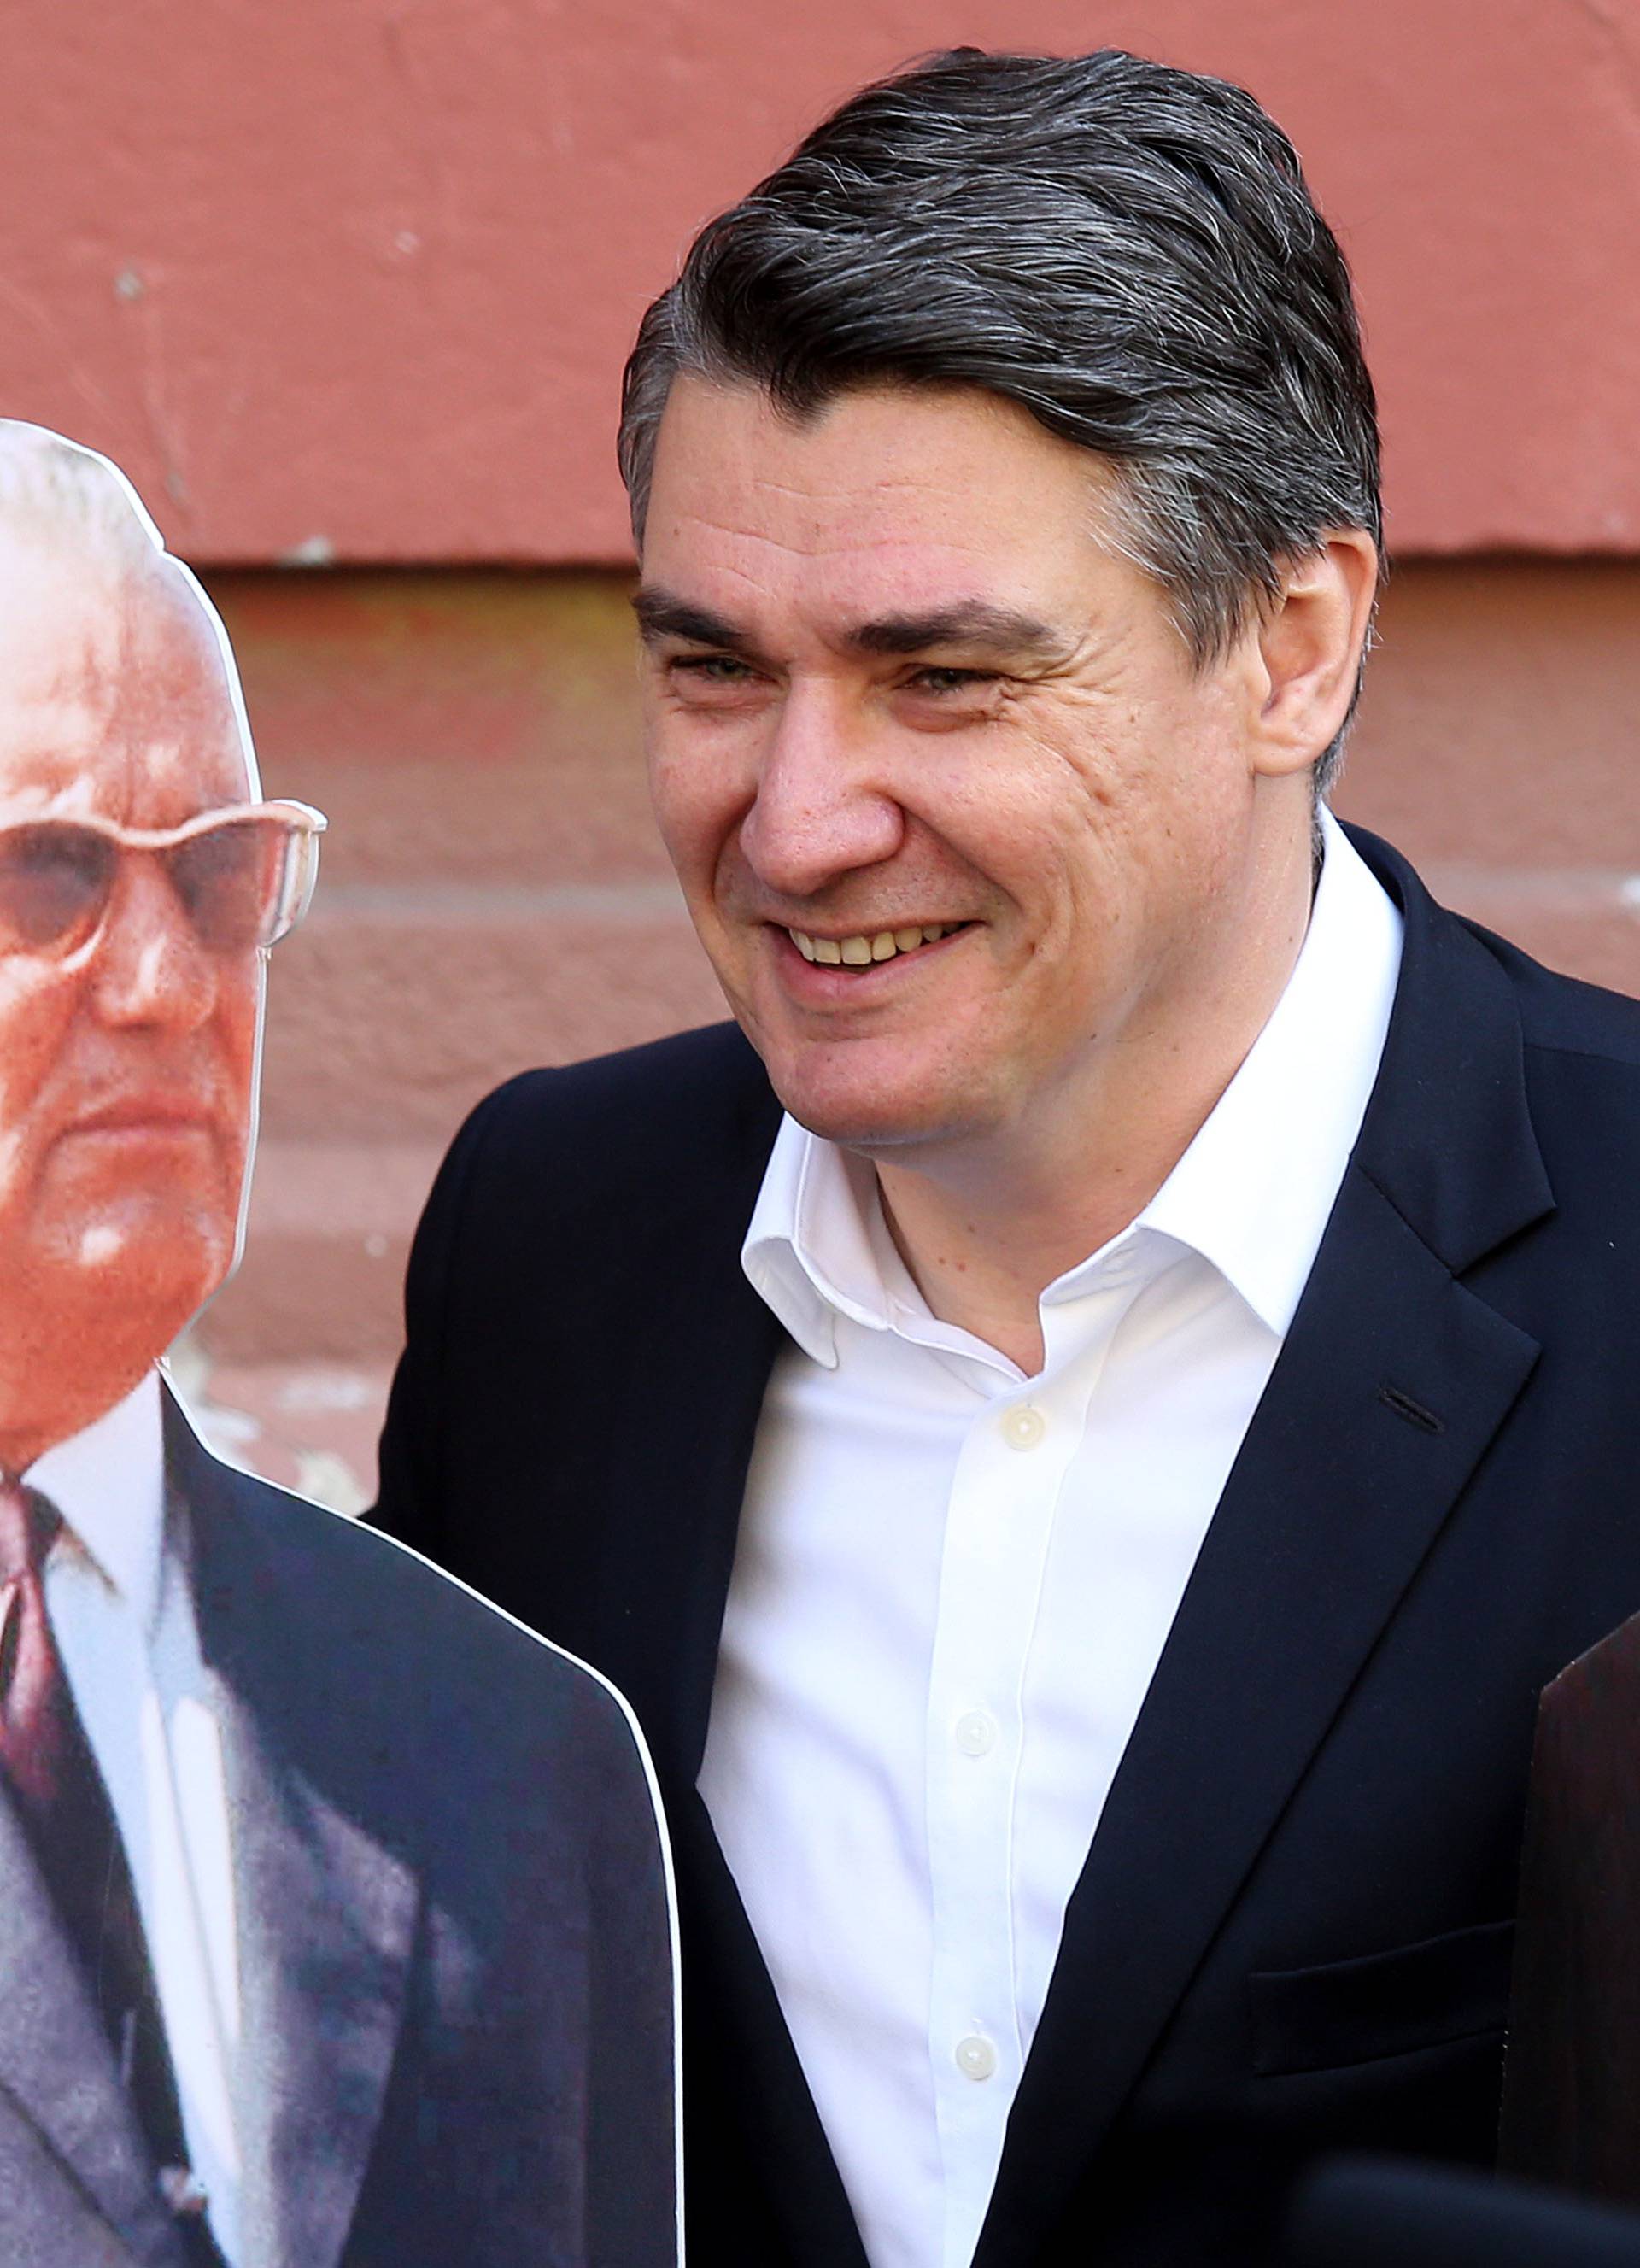 Iz DIP-a pitali: Jesu li Tito i Tuđman na izbornim listama?